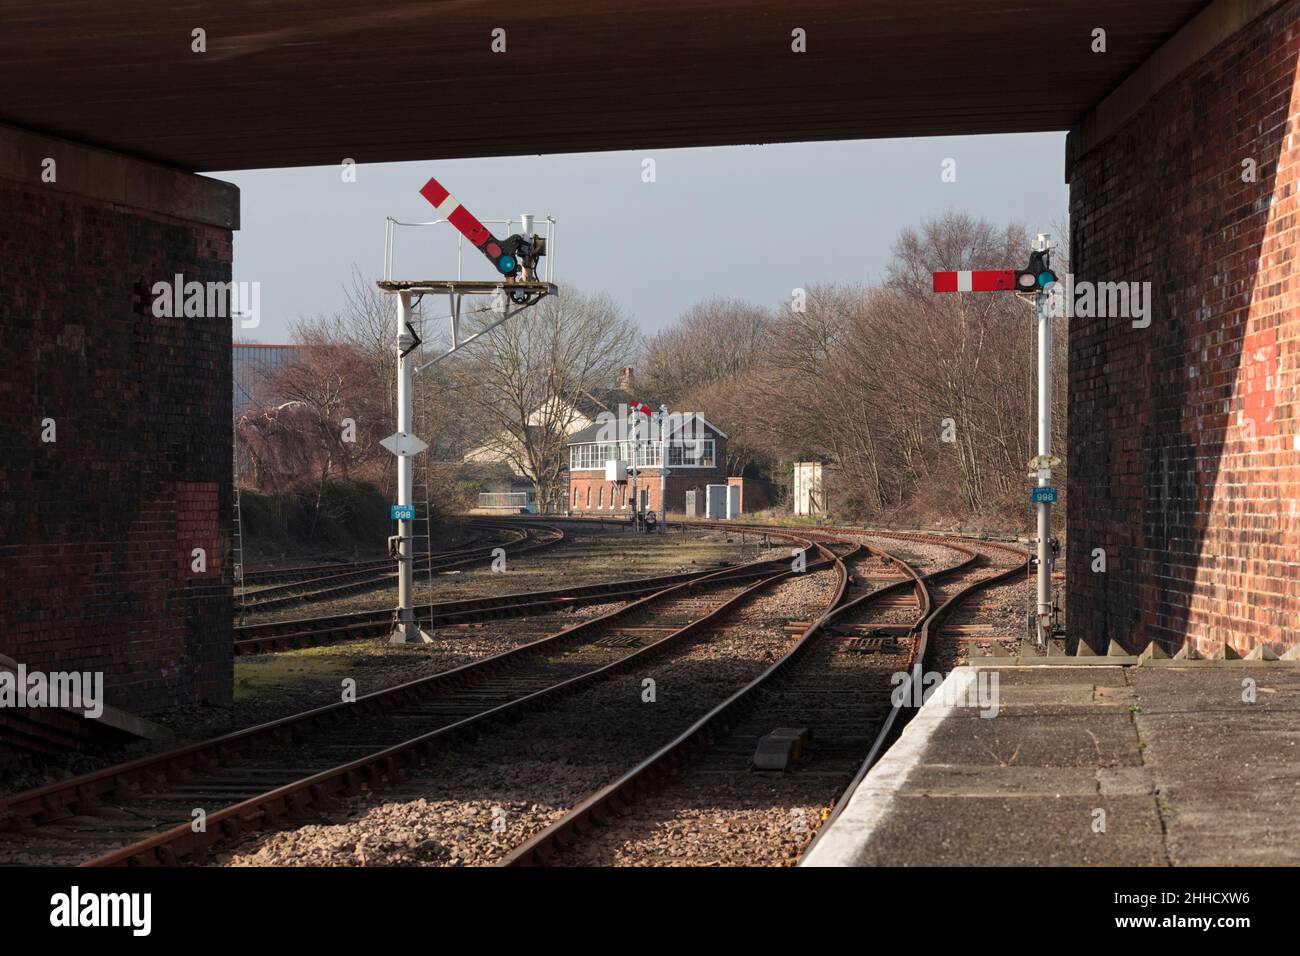 UK chemins de fer Bridlington signaux de boîte de signalisation et de sémaphore du quadrant supérieur.Les signaux mécaniques de la voie ferrée ont depuis été supprimés Banque D'Images